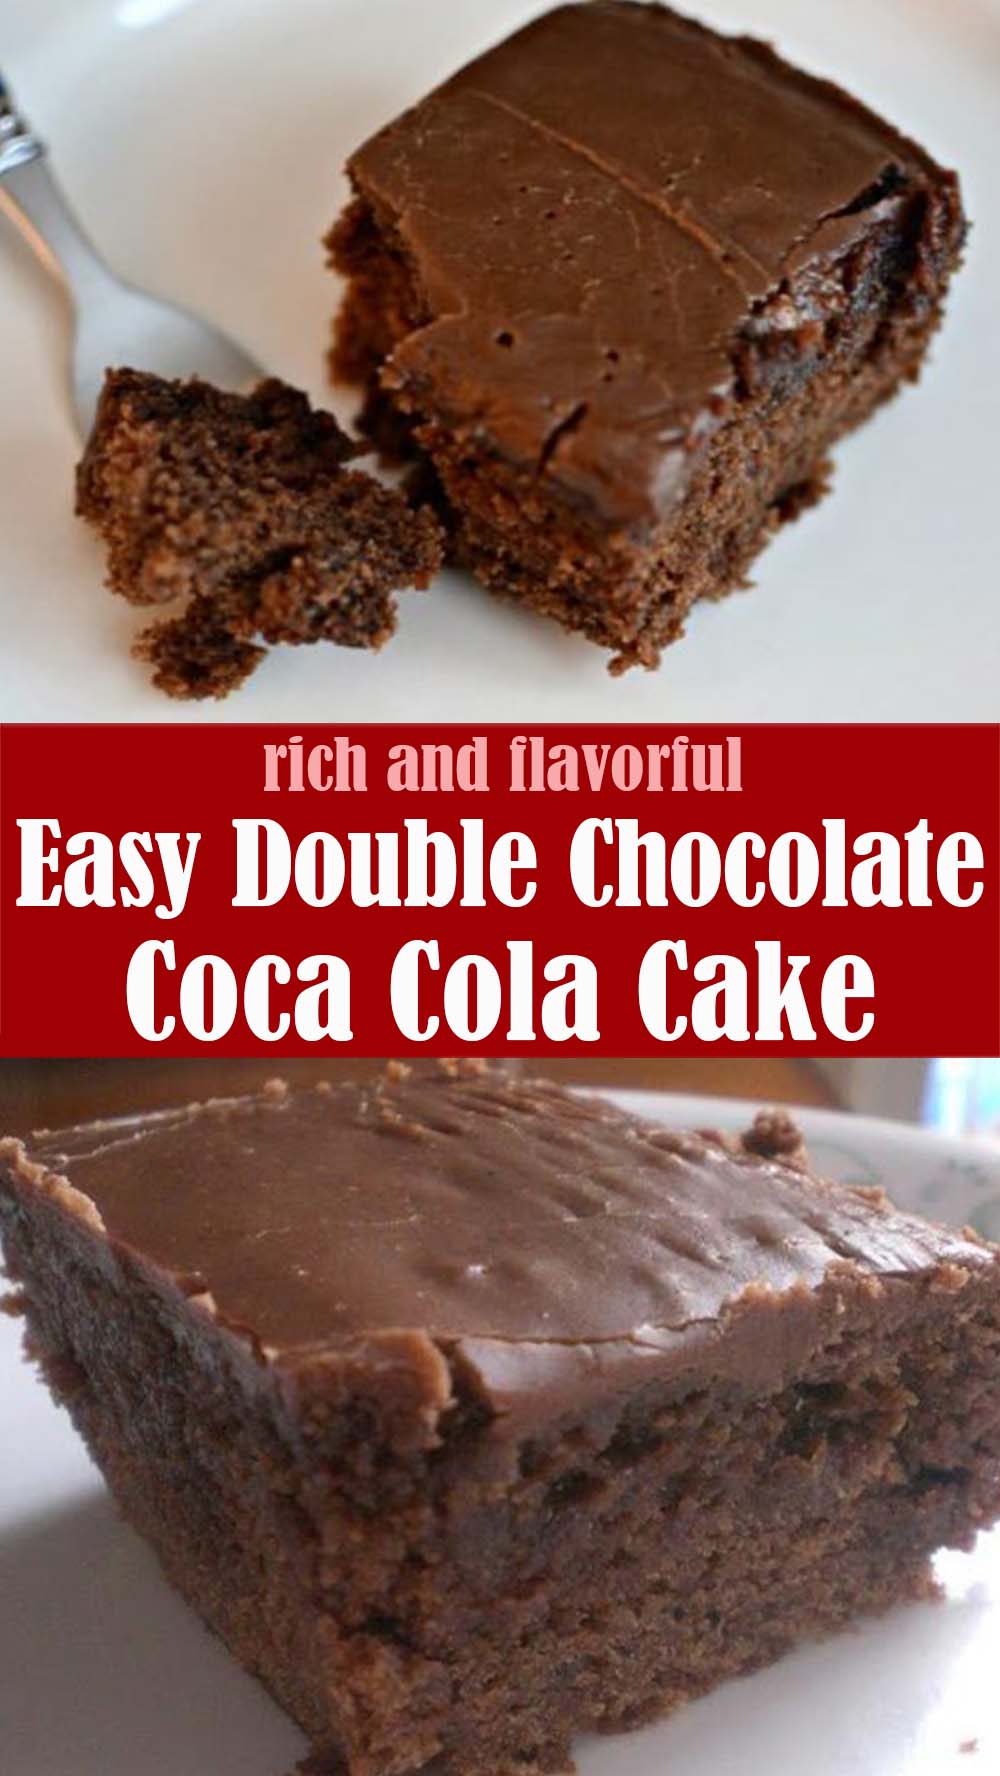 Easy Double Chocolate Coca Cola Cake